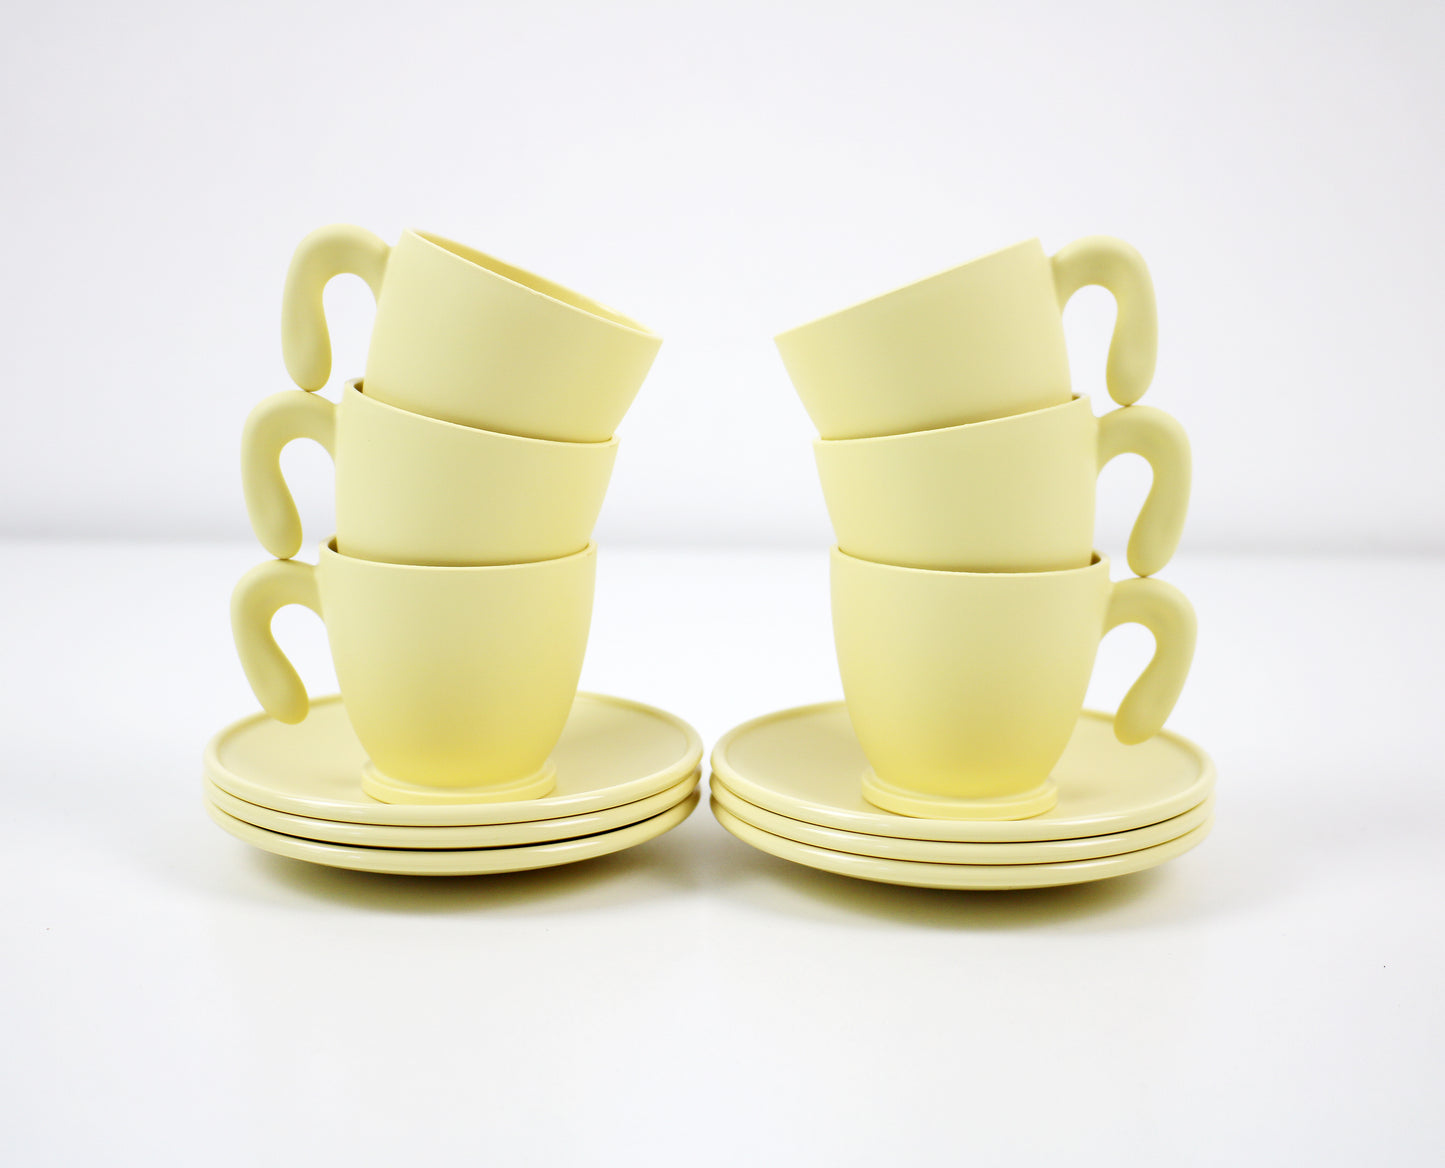 Angletti and Ruzza Zaza espresso cups - cream yellow Fratelli Guzzini